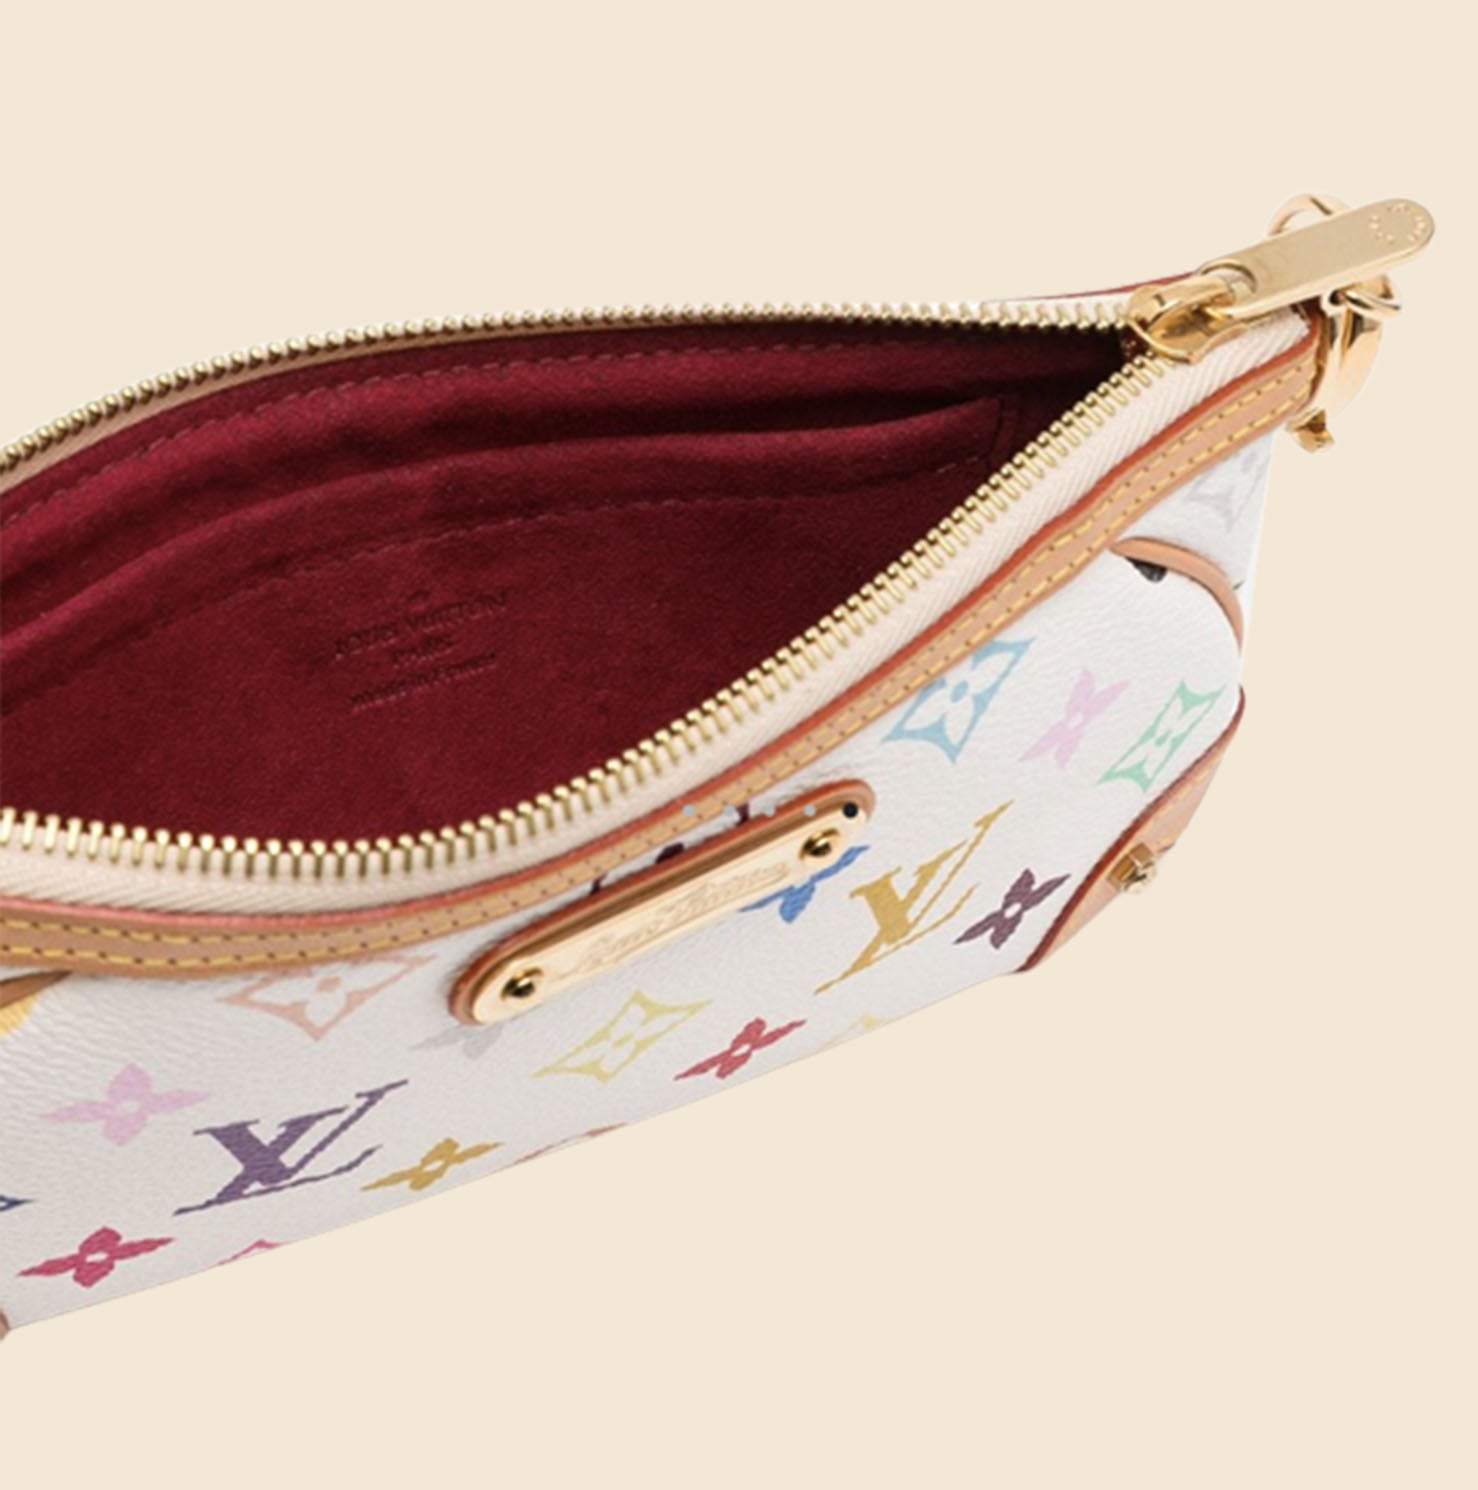 Milla cloth handbag Louis Vuitton White in Cloth - 32449651